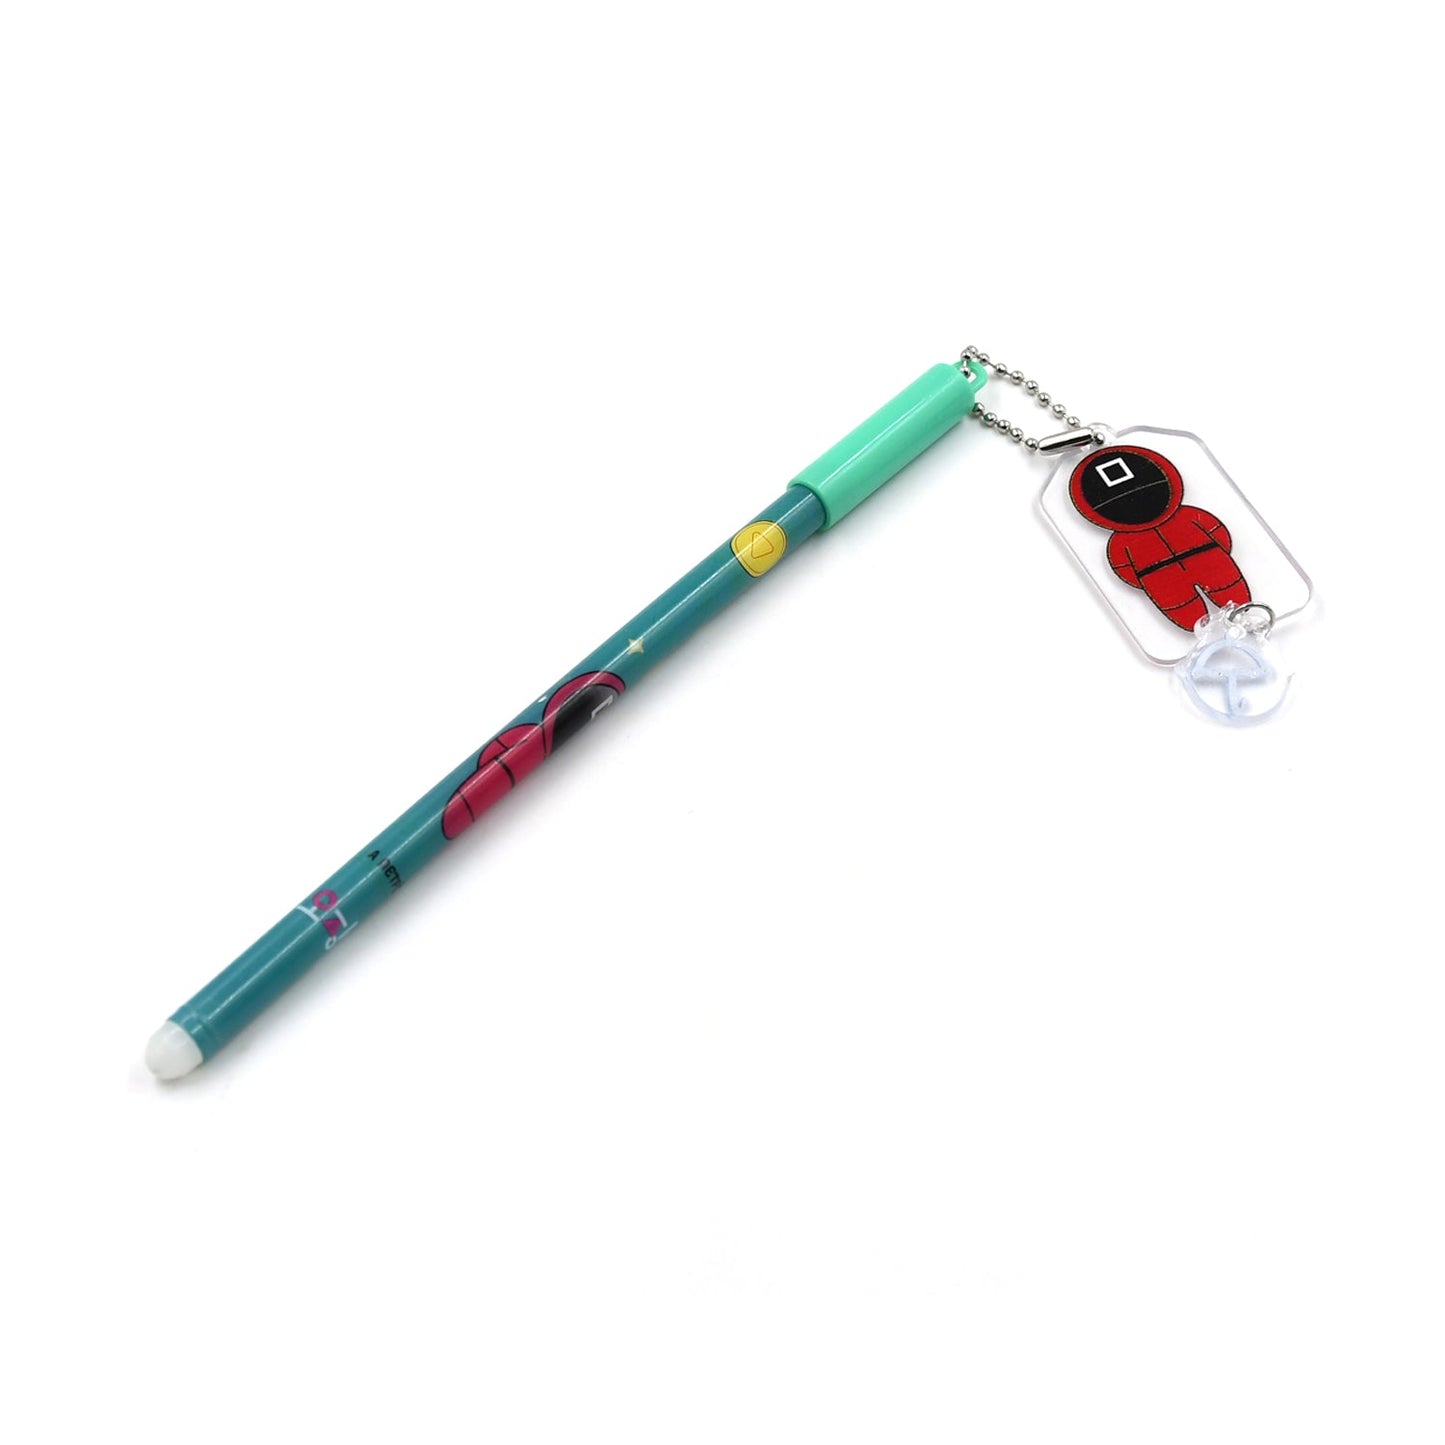 स्कूल, कार्यालय और बच्चों के मनोरंजन के लिए गेम बच्चों का फैंसी पेन नई शैली का बच्चों का बॉल पेन 